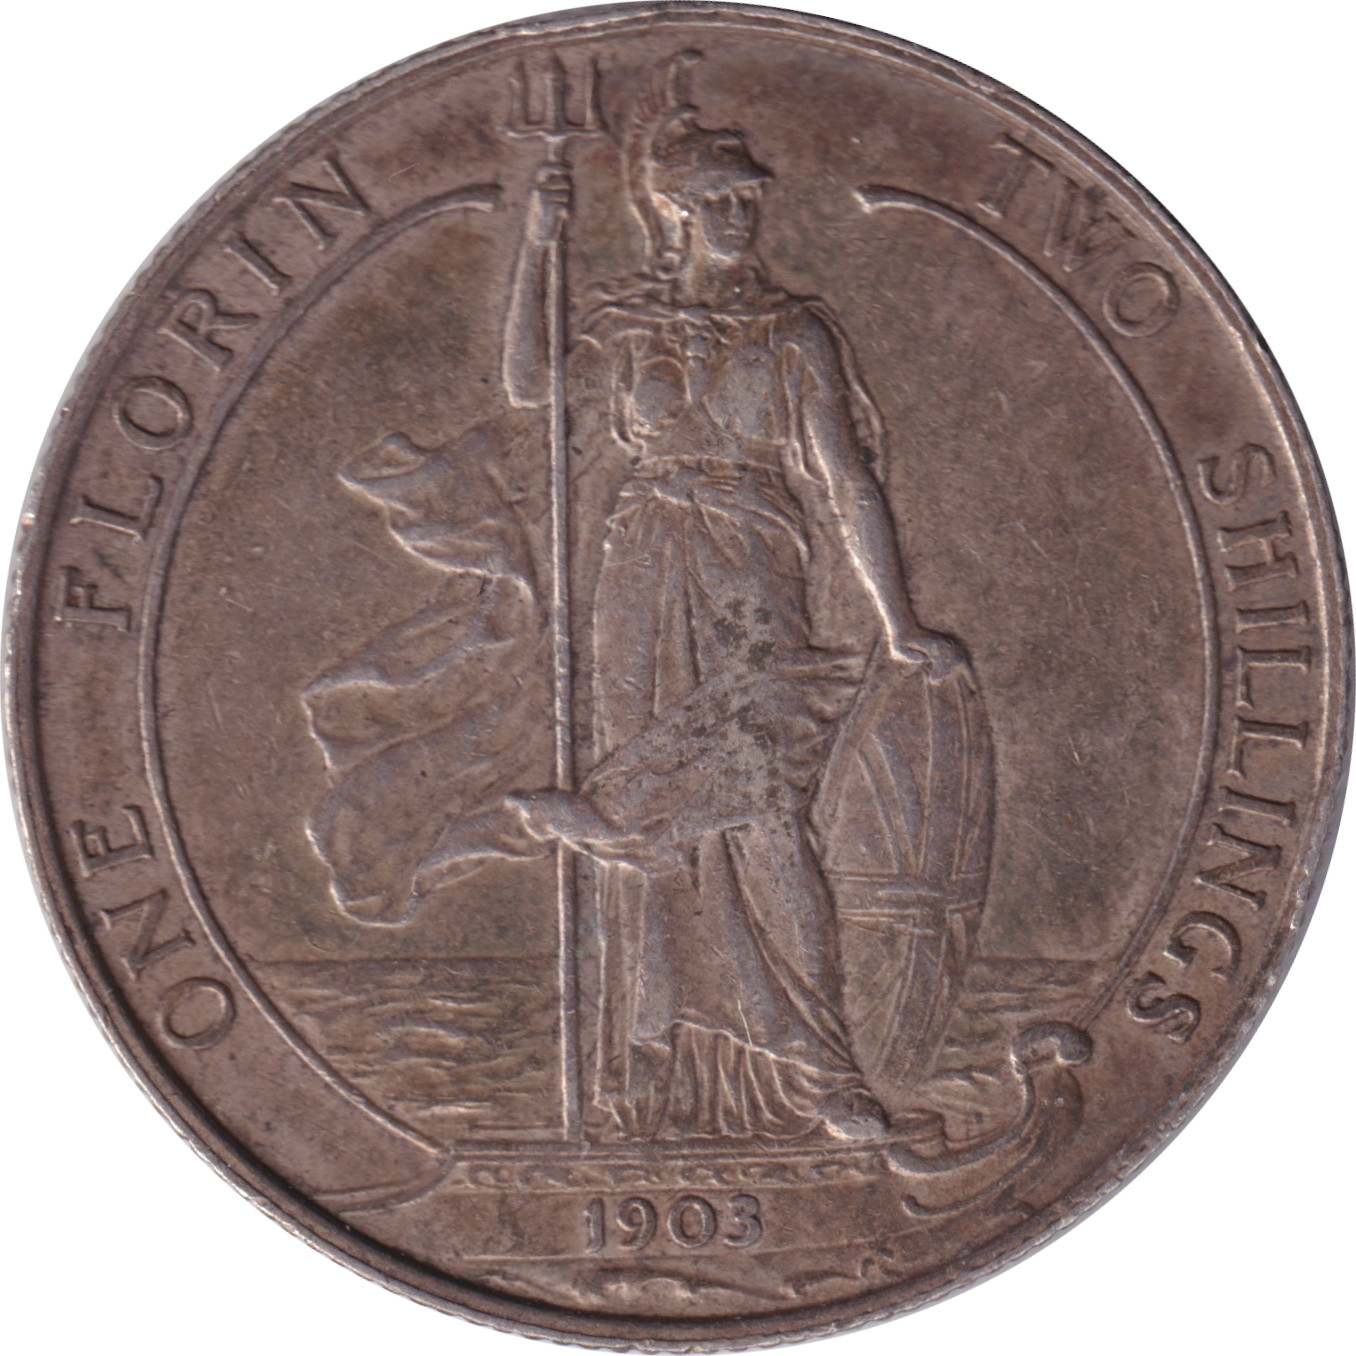 1 florin - Edouard VII